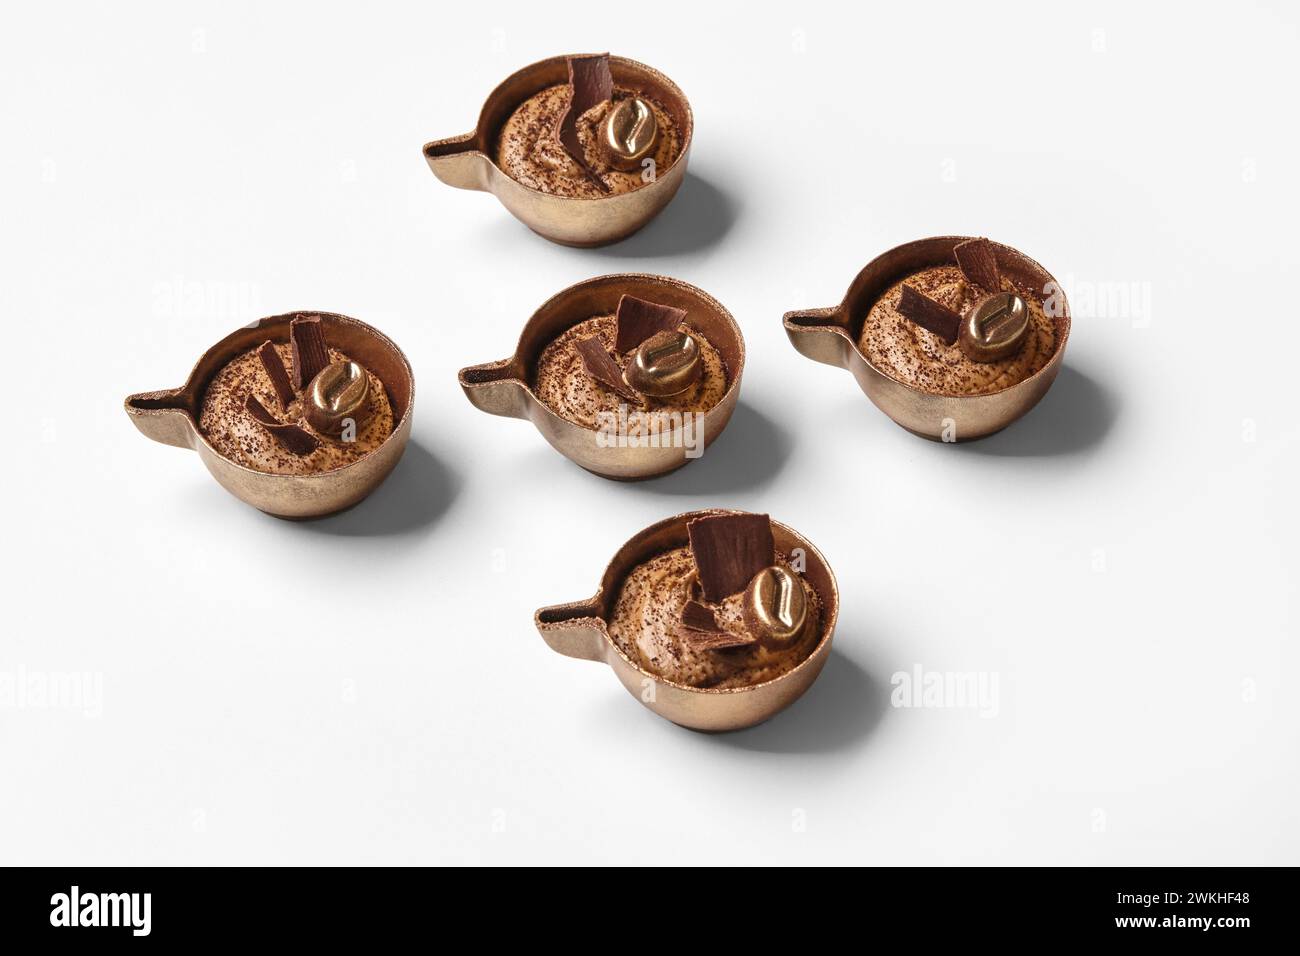 Handgemachte Schokoladenbonbons mit reichhaltiger Kaffeesahne, künstlerisch gestaltet, um wie kleine Kaffeetassen vor weißem Hintergrund aussehen zu lassen Stockfoto